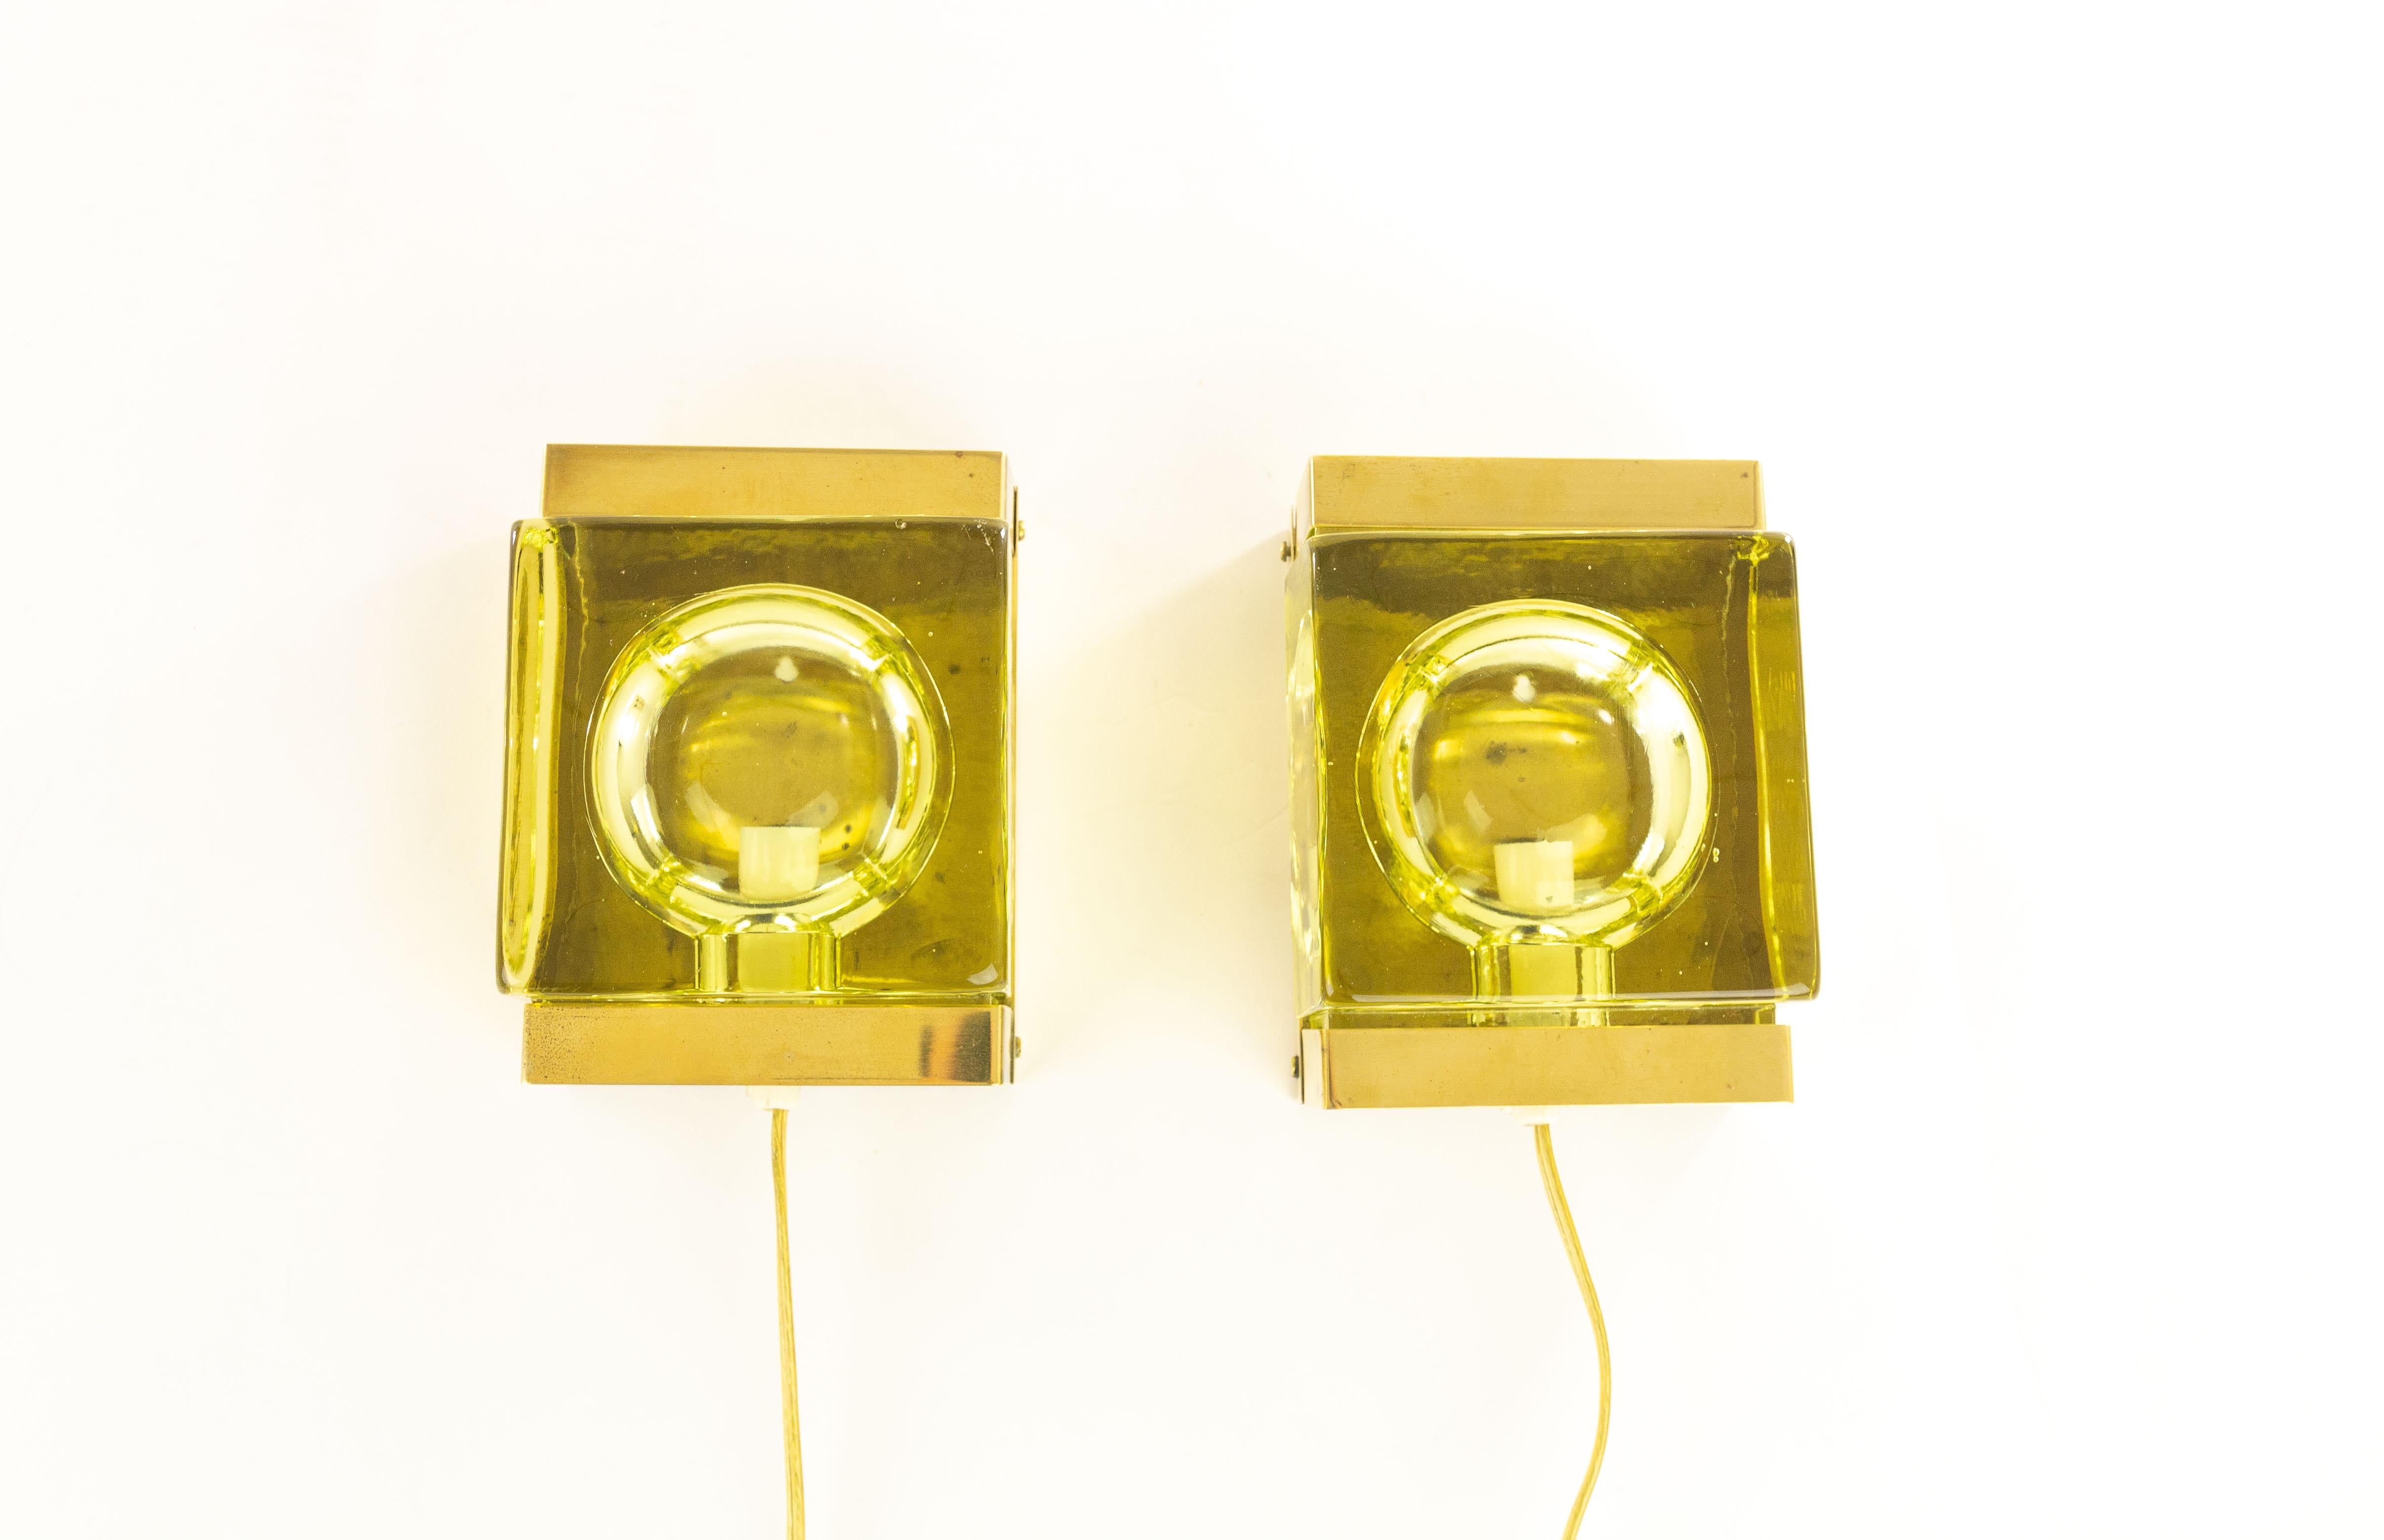 Ein Paar Maritim Lampet Wandlampen, hergestellt vom dänischen Leuchtenhersteller Vitrika in den 1970er Jahren. Die Version mit dem grünlichen Glas ist etwas Besonderes und schwer zu finden.

Beide Lampen bestehen aus zwei Teilen: einem massiven